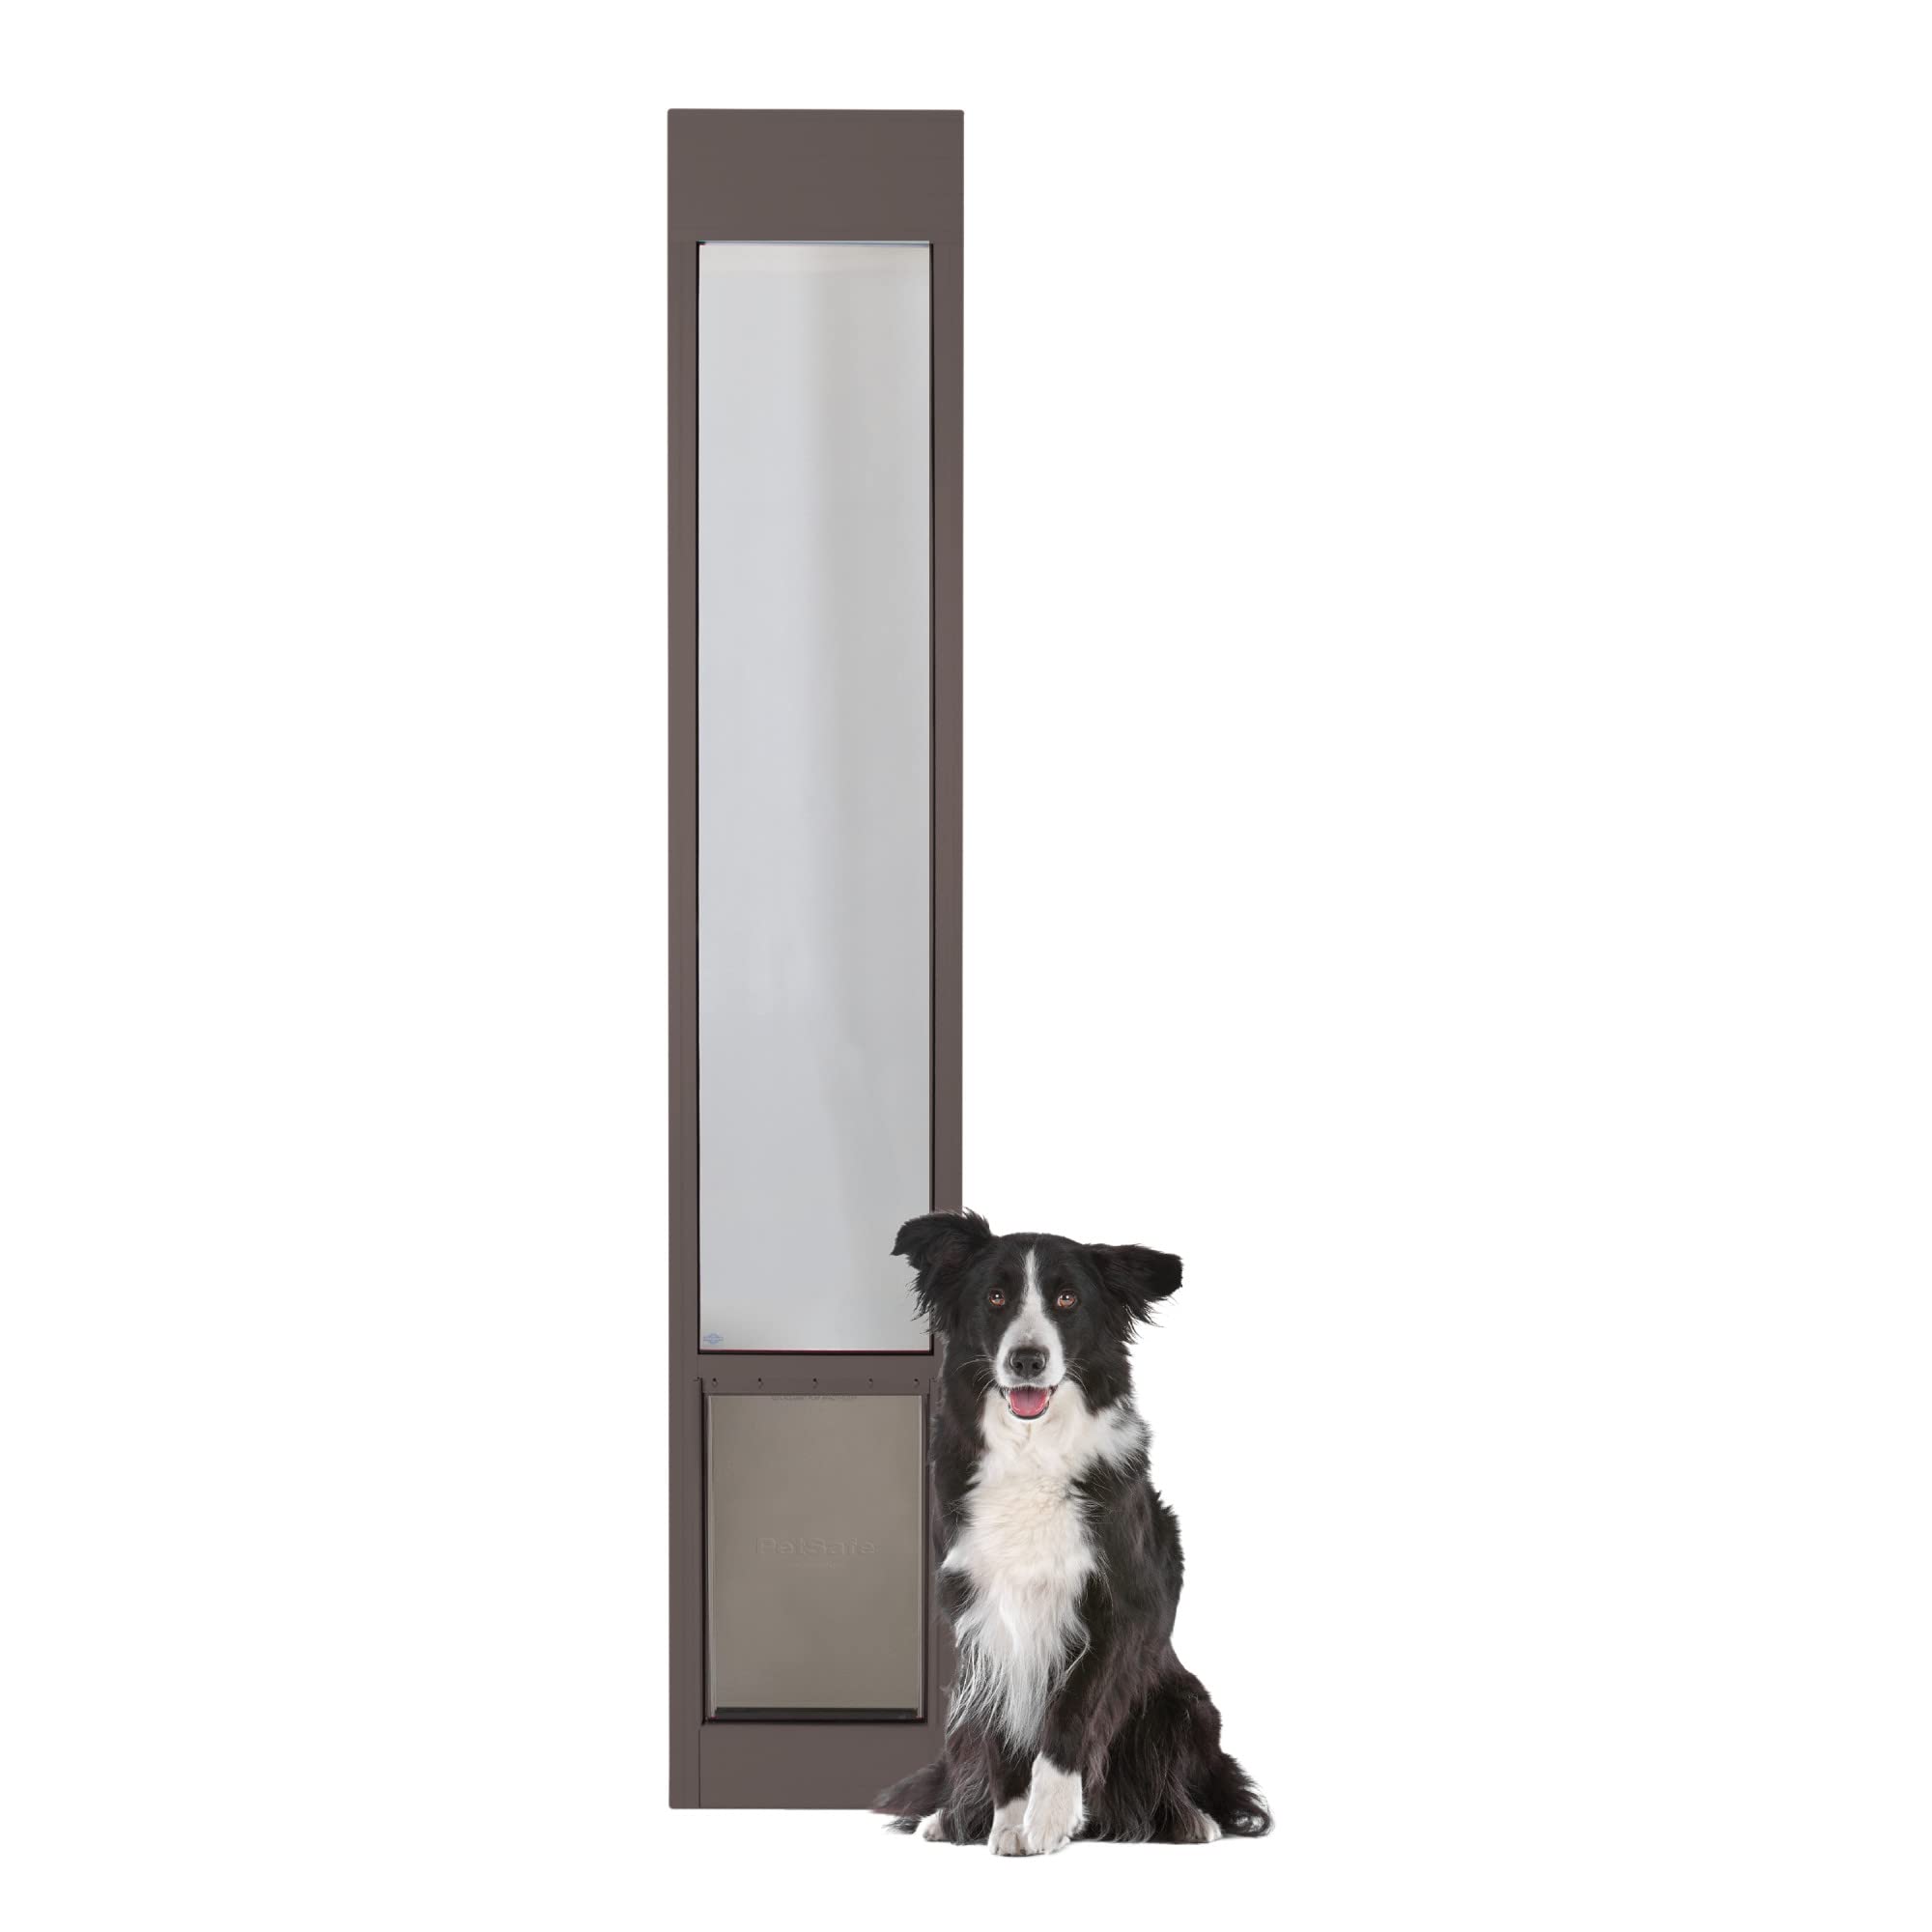  PetSafe 1ピーススライドガラスペットドア - 犬と猫用の屋外アクセスパティオパネルインサート、カットなしで簡単に取り付け、耐候性アルミニウム...